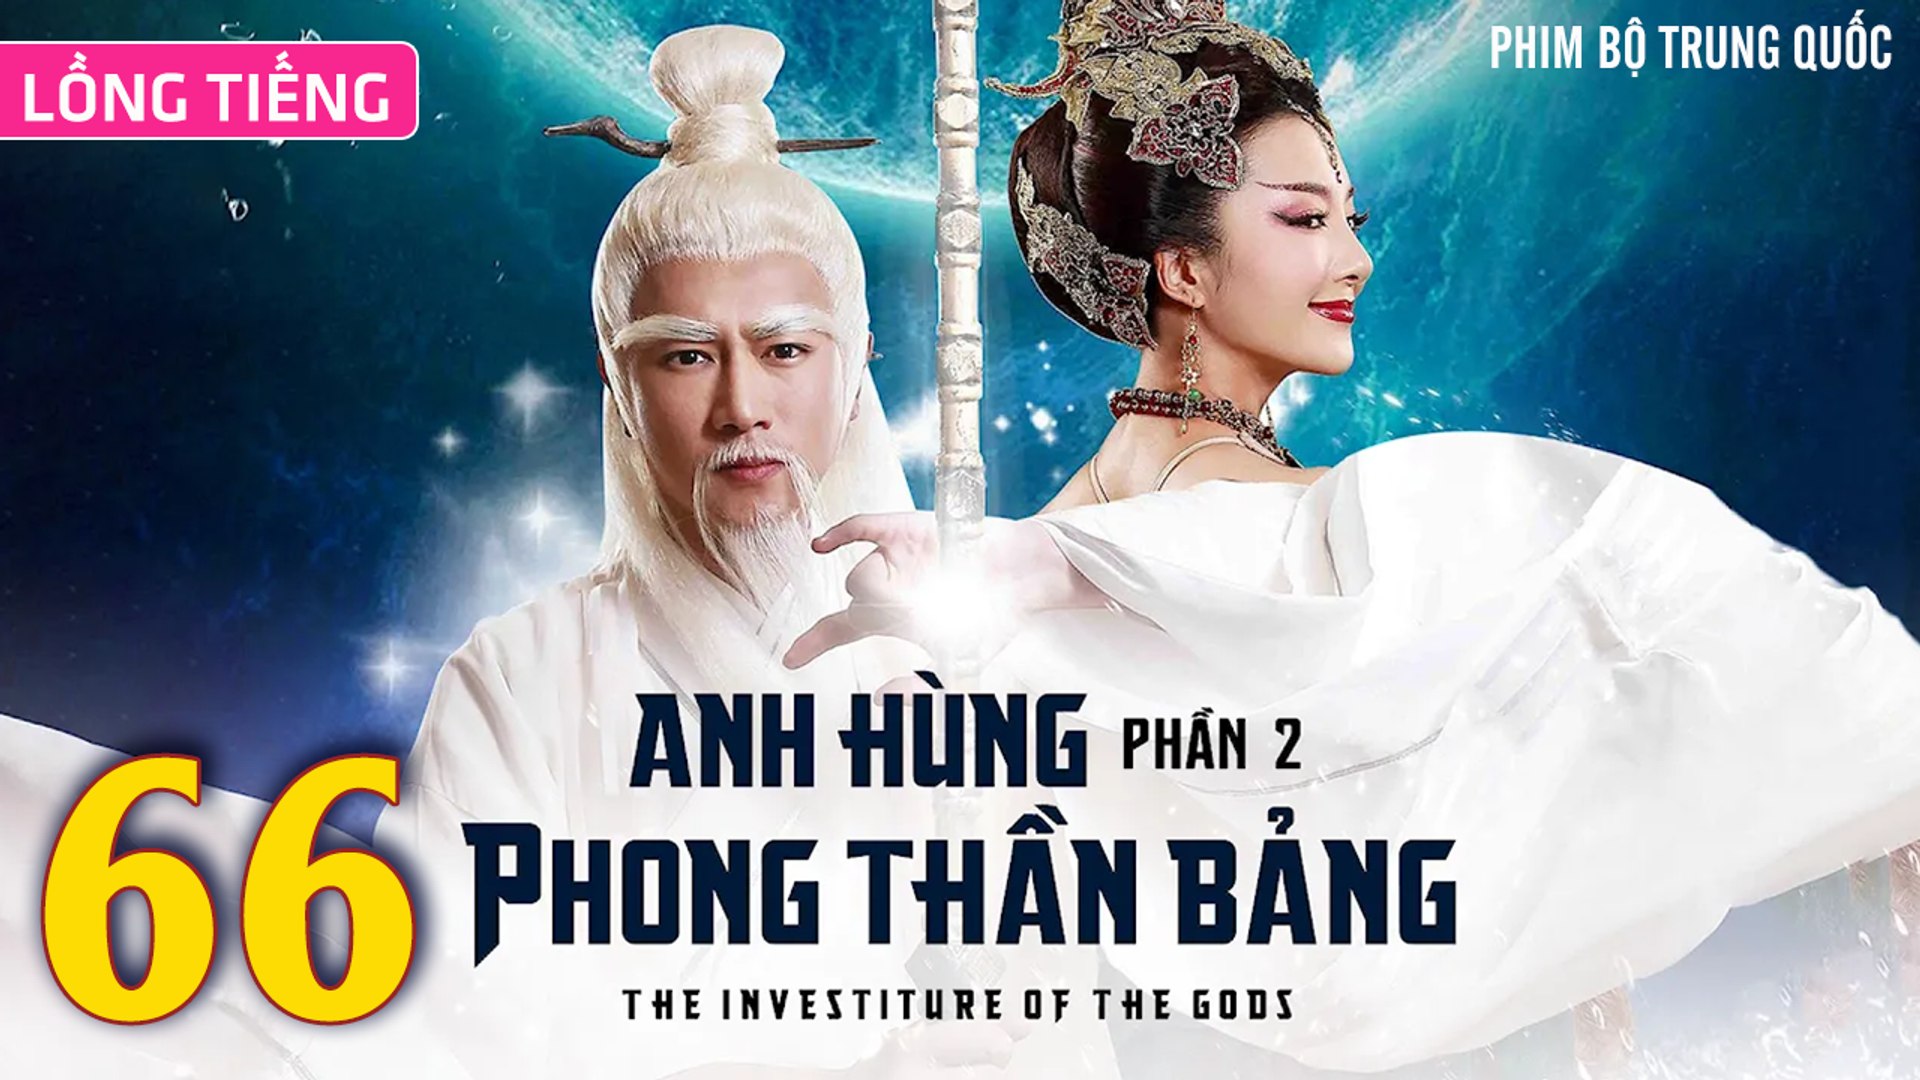 ⁣Phim Bộ Hay: ANH HÙNG PHONG THẦN BẢNG 2 - Tập 66 (Lồng Tiếng) | Phim Bộ Trung Quốc Hay Nhất 2023